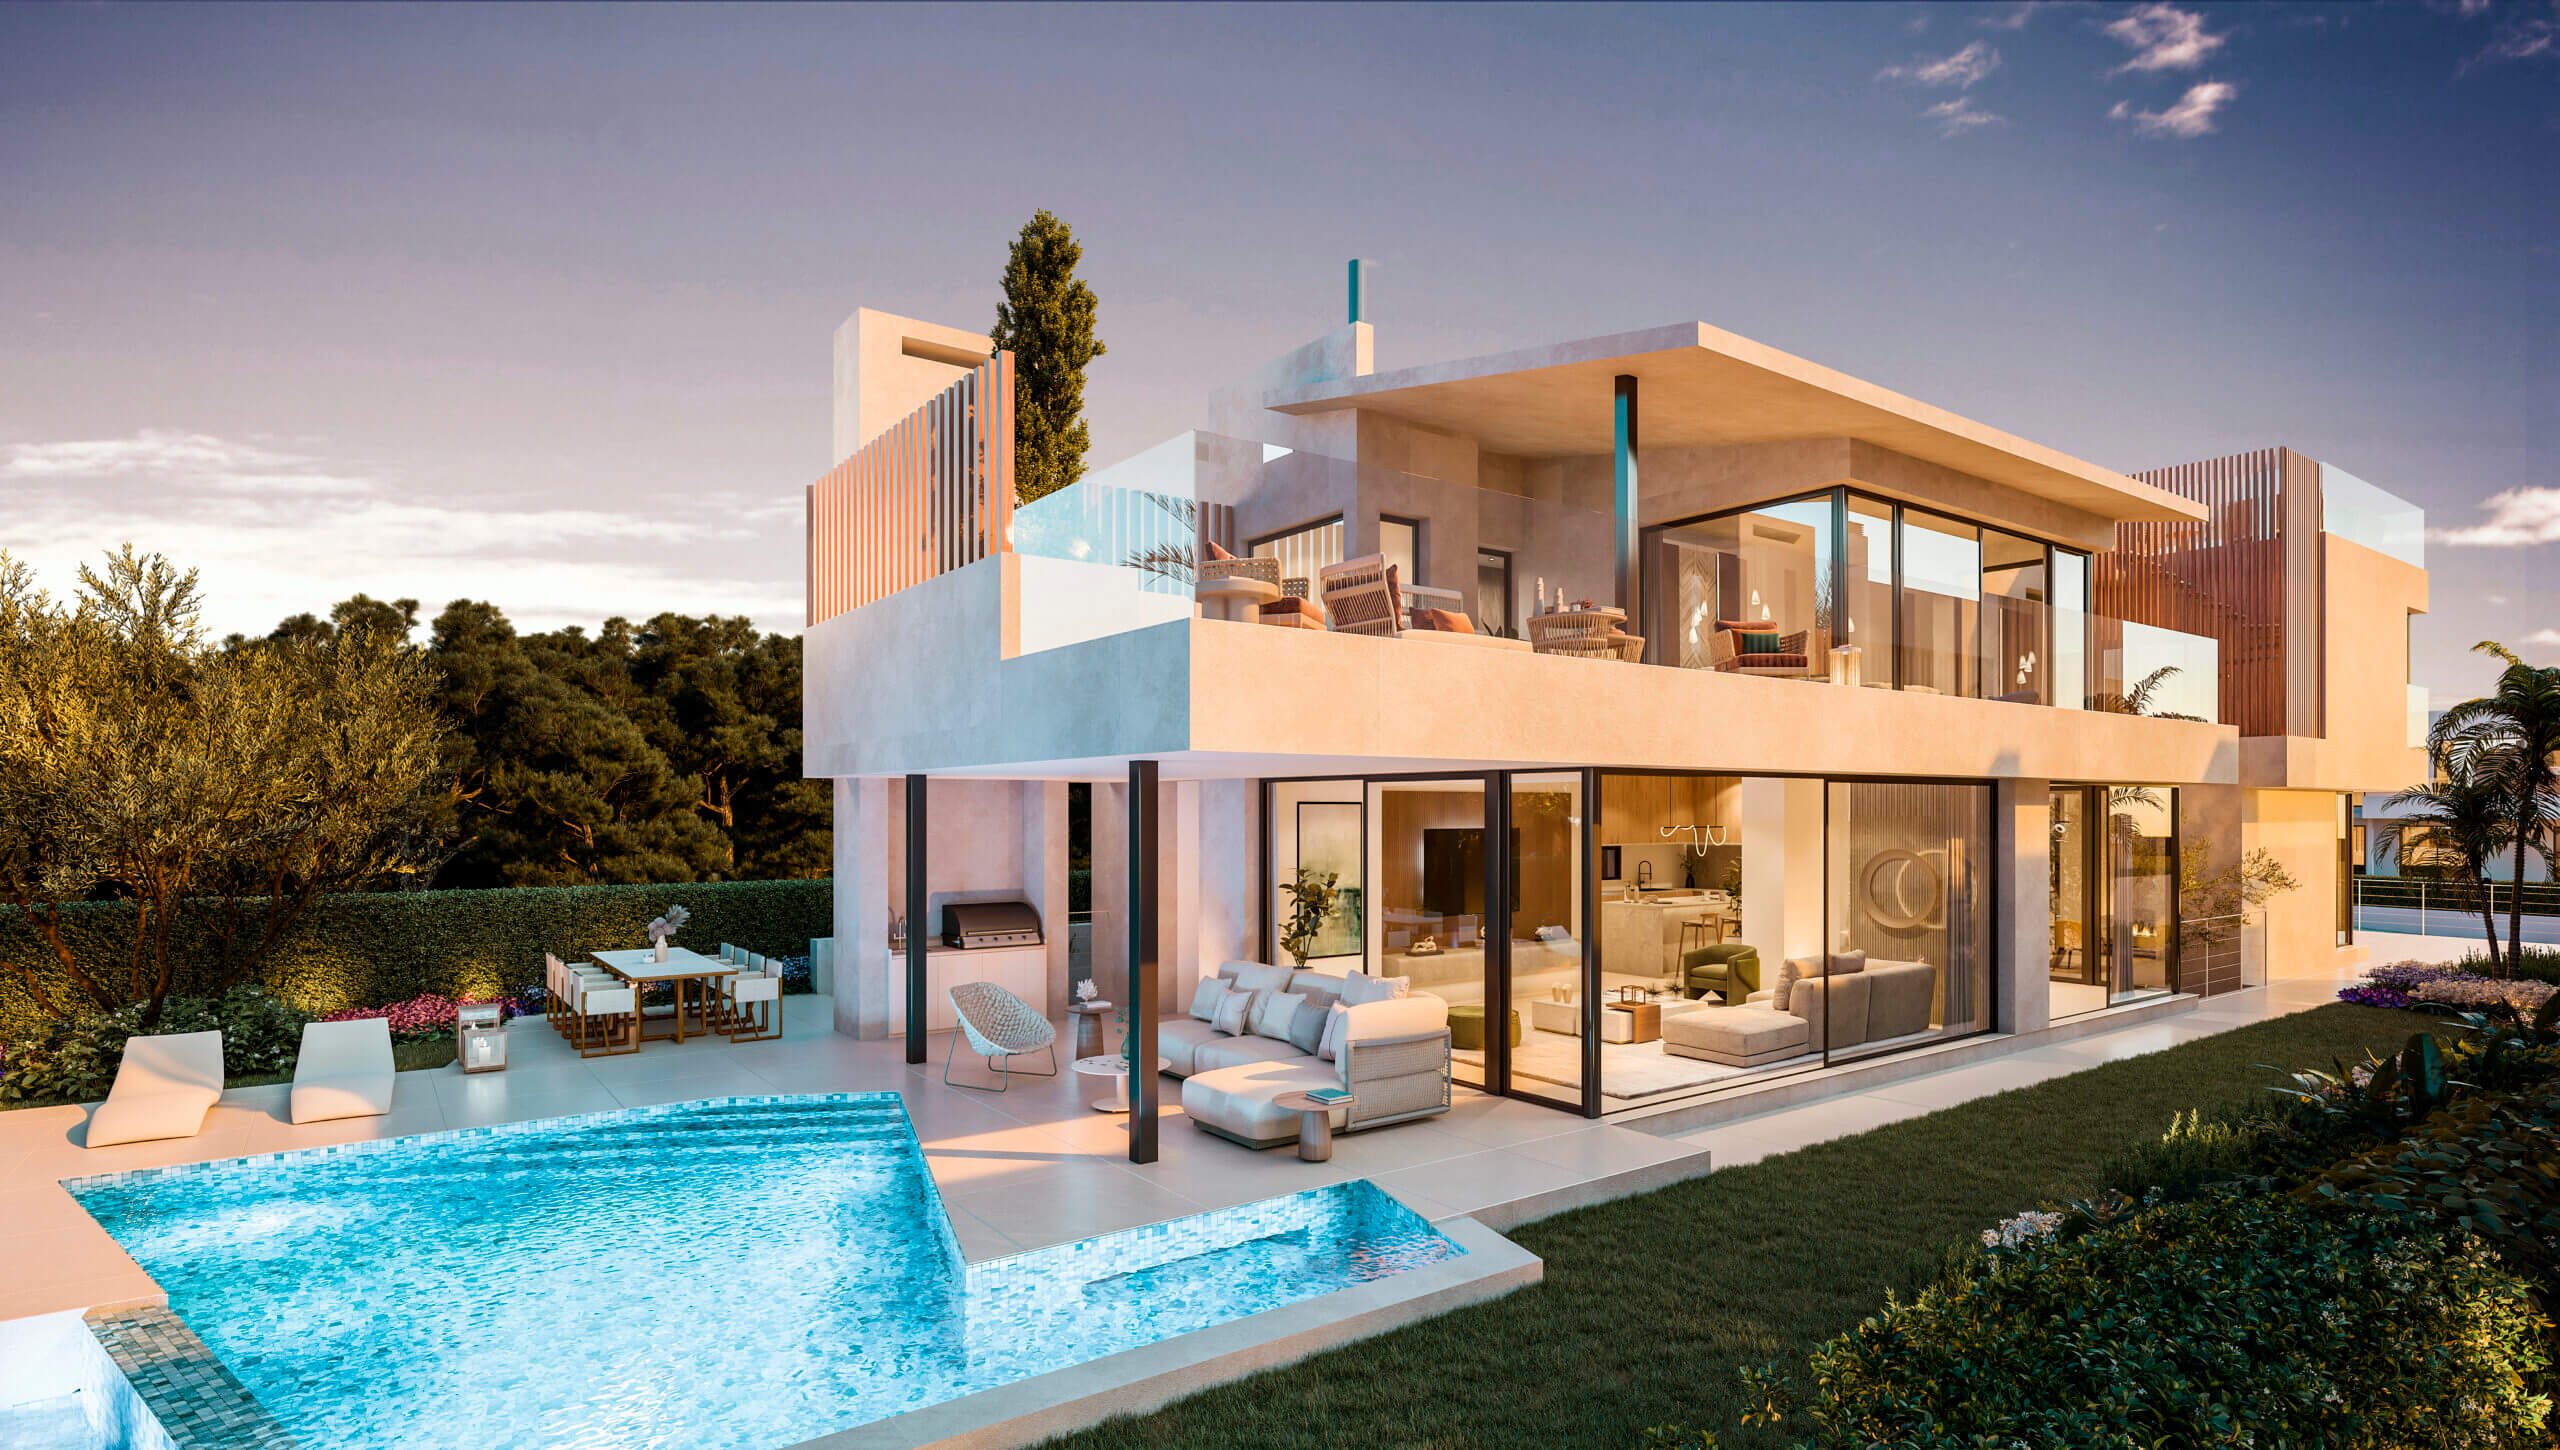 villas higueron vrijstaande woning kopen zeezicht nieuwbouw modern instapklaar zwembad